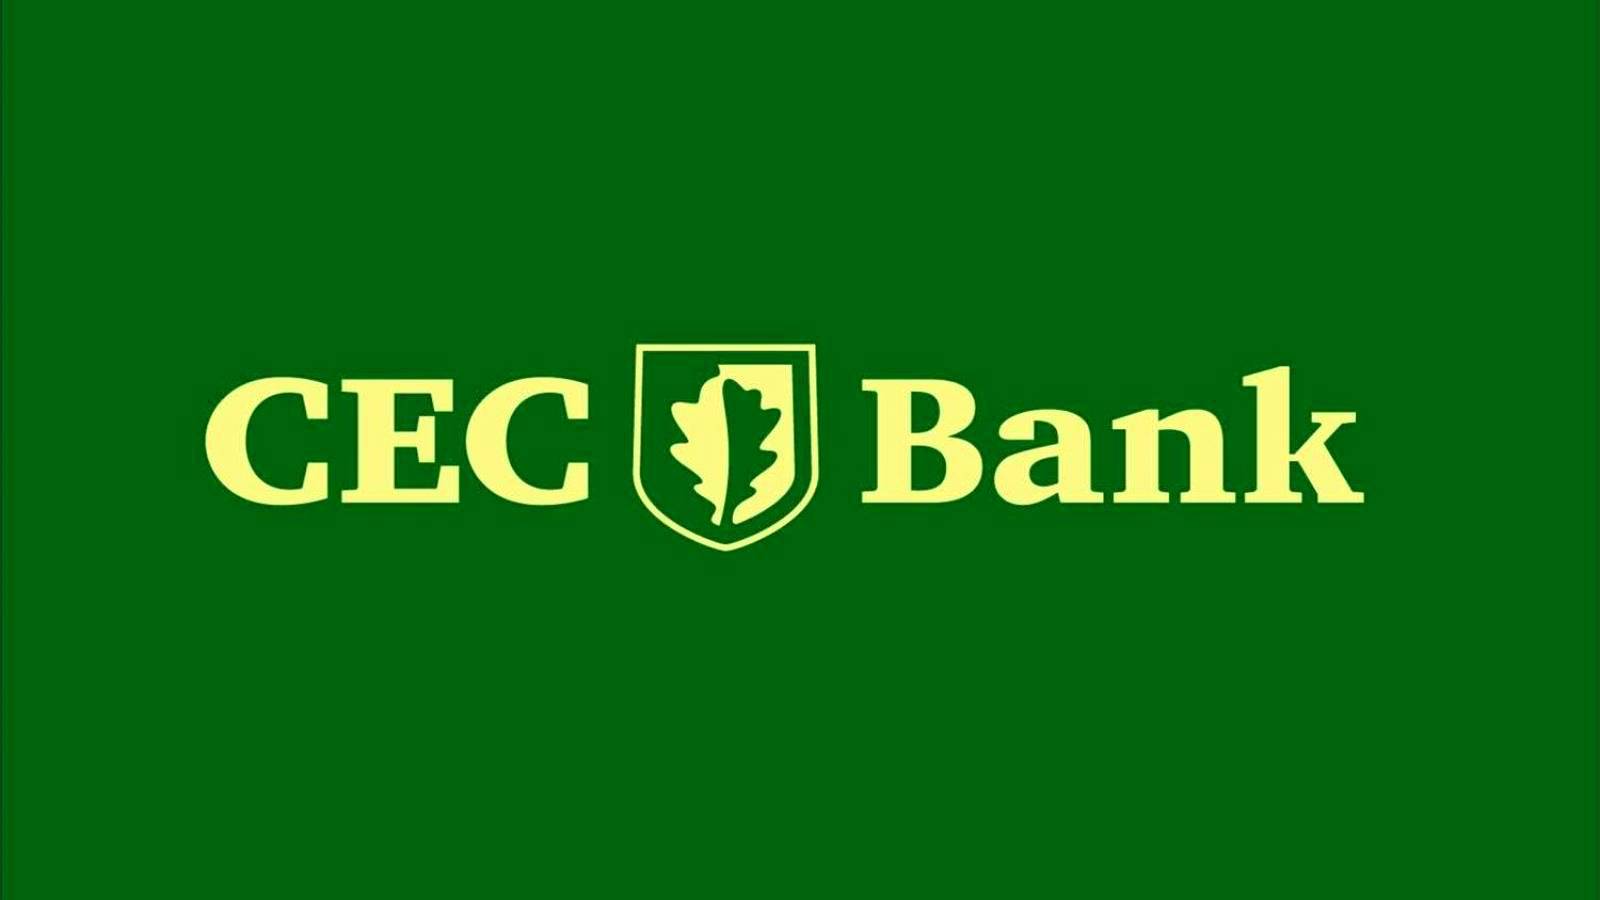 CEC Bank VIKTIGT beslut för kunder officiellt meddelat